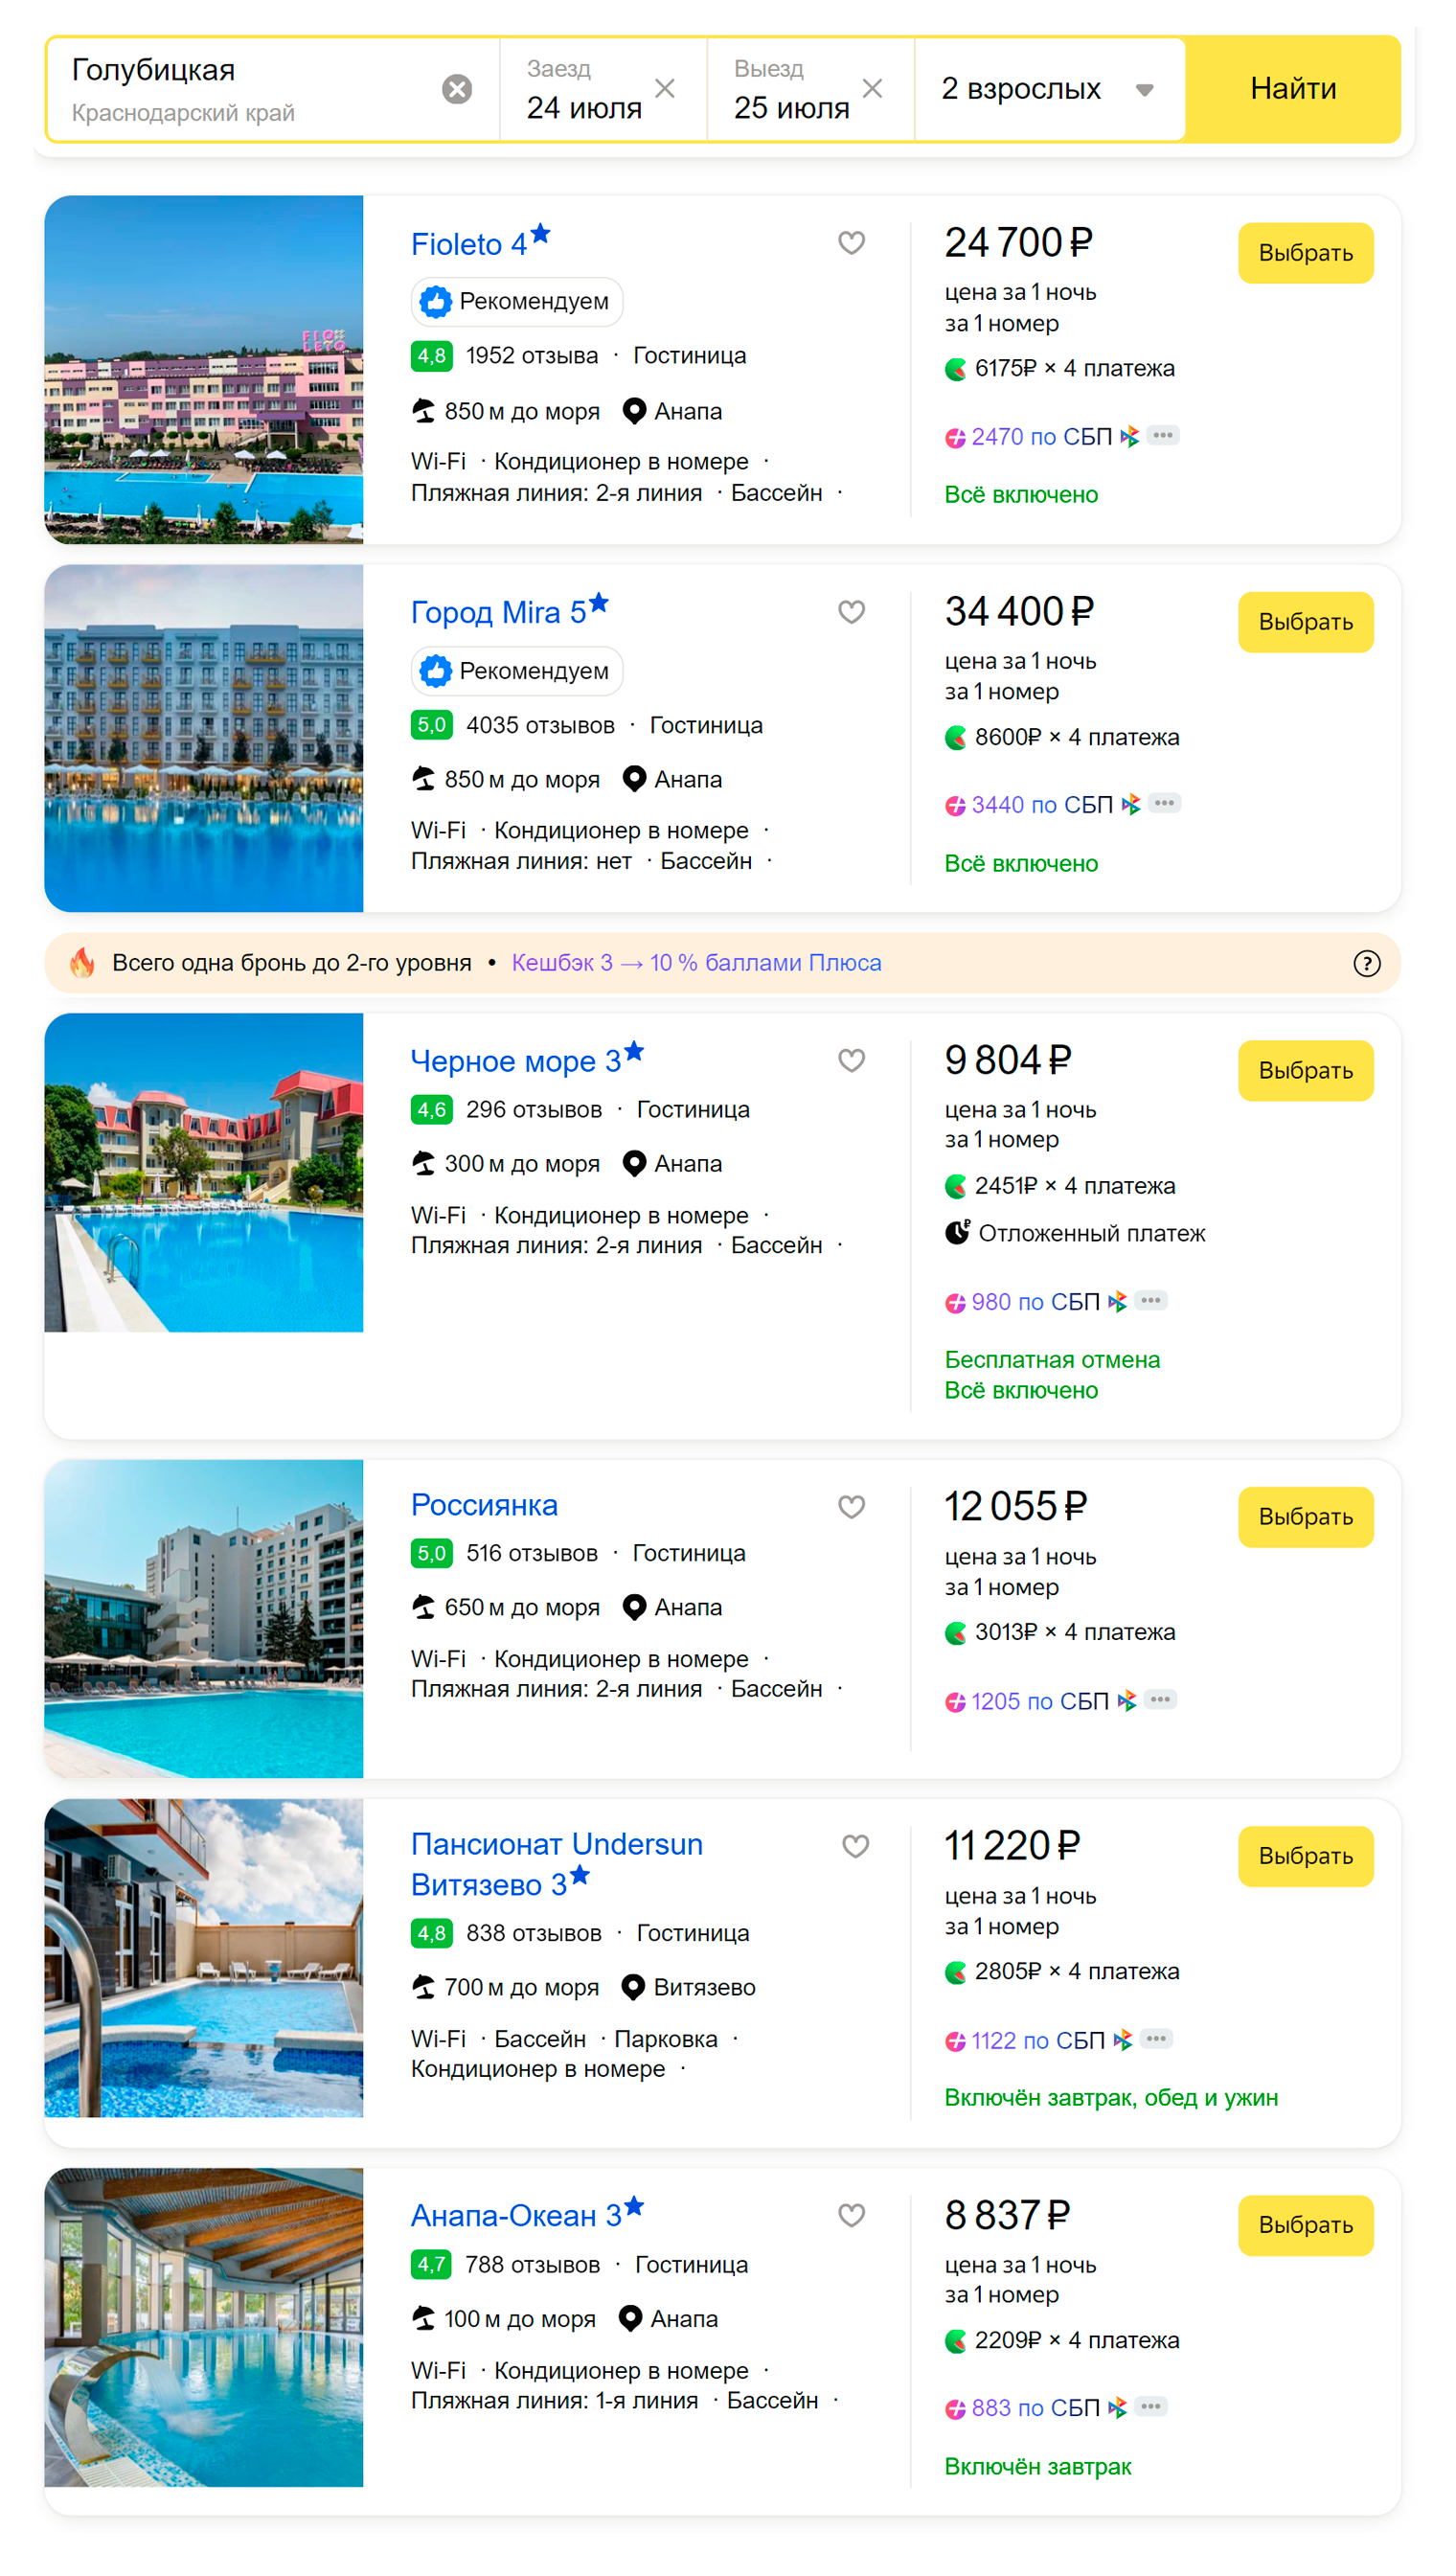 Цены на жилье у моря. Источник: travel.yandex.ru